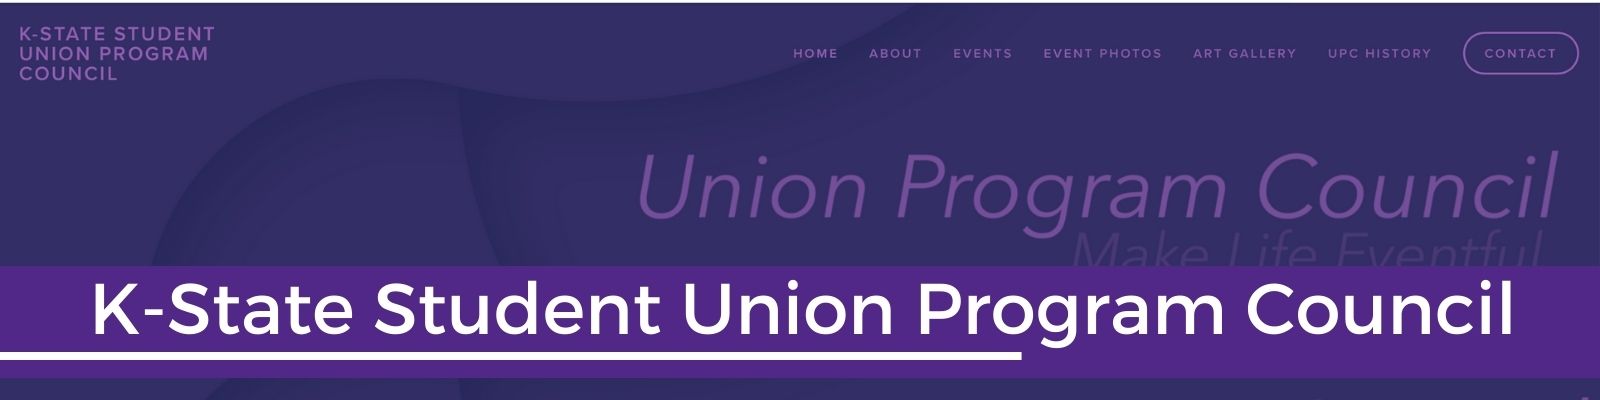 text Union Program Council 